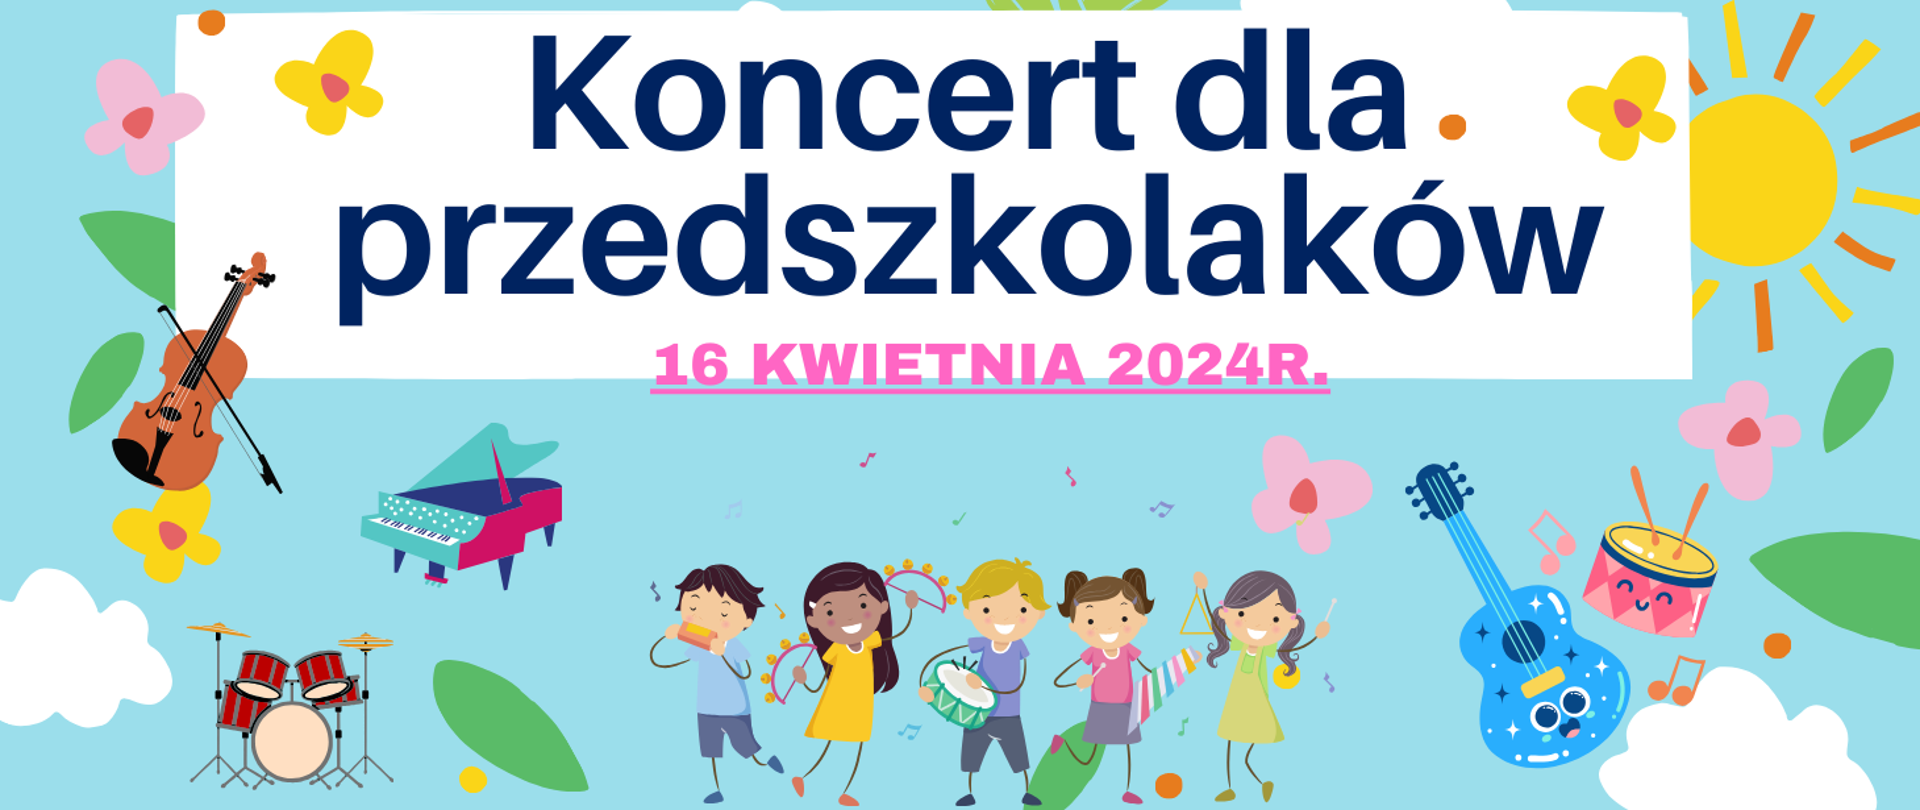 Kolorowy baner informujący o koncercie dla przedszkolaków.